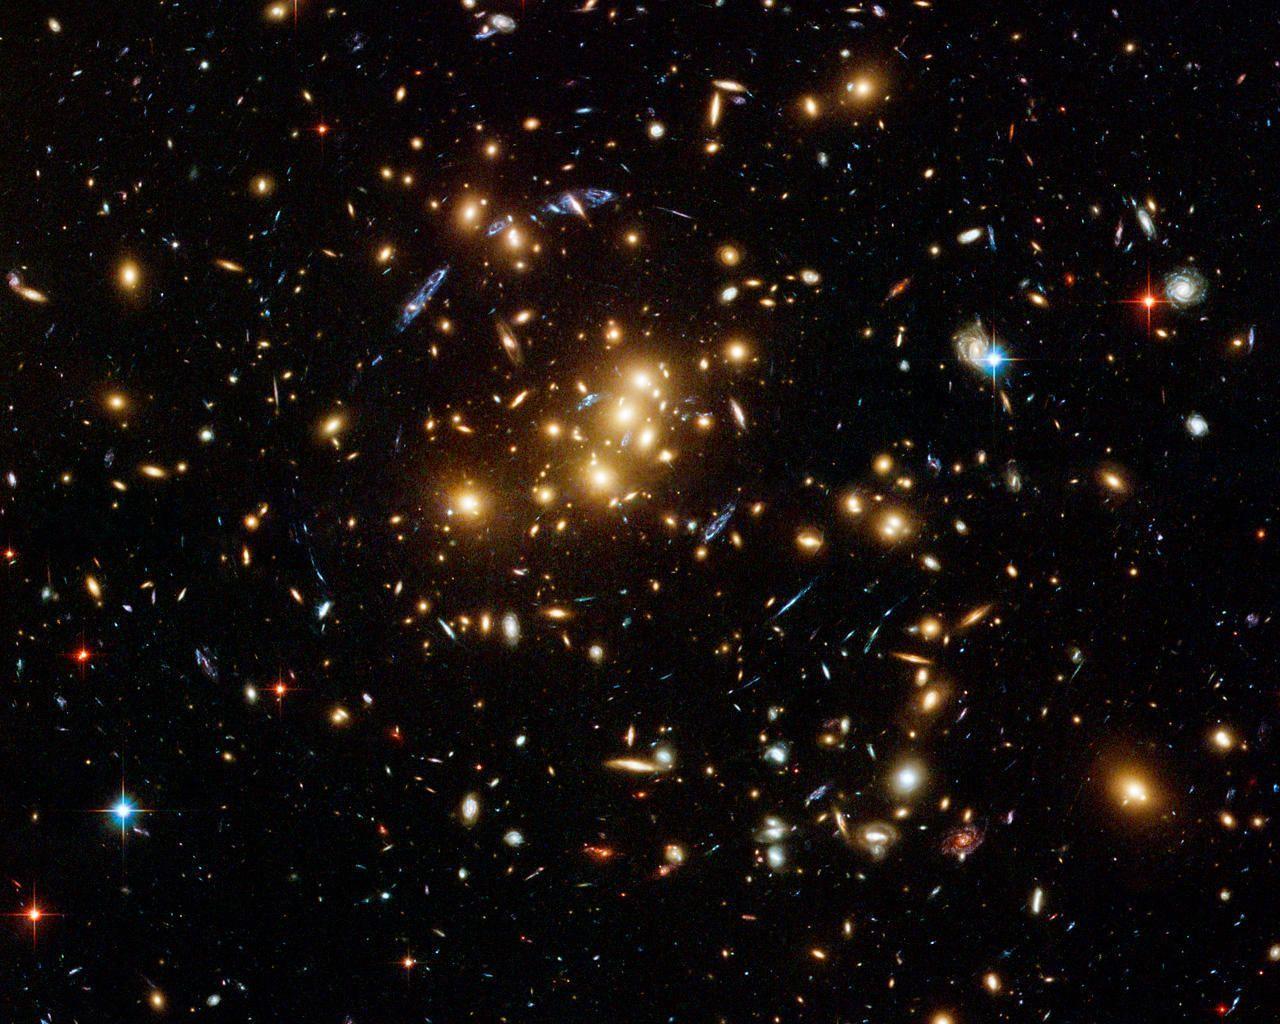 Hubble Ultra Deep Field Wallpaper Space taken from Hubble